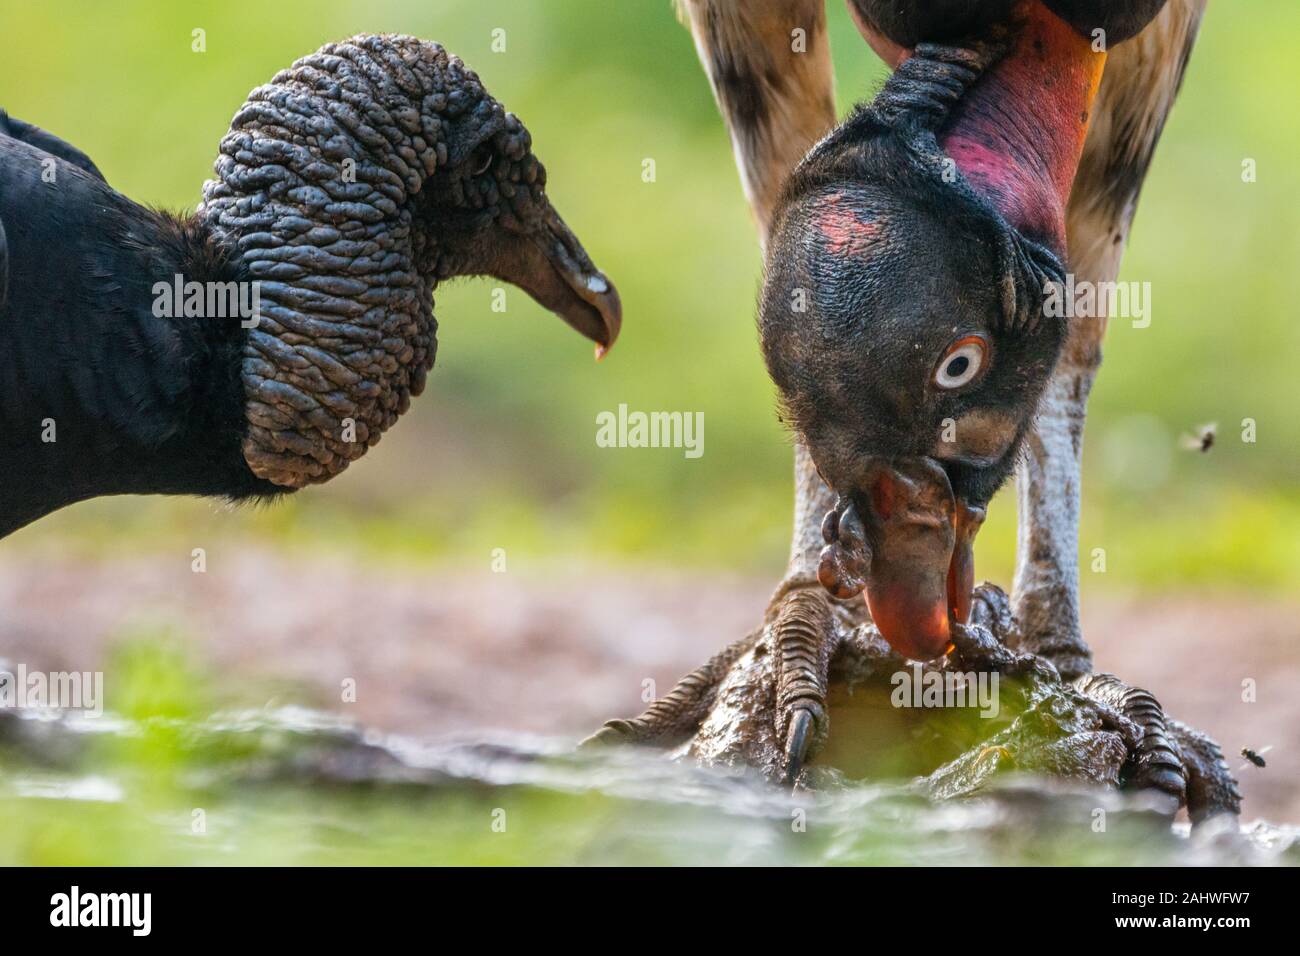 Le roi vautour juvénile (Sarcoramphus papa) se nourrit d'une charogne alors qu'une vautour noire (Coragyps atratus) montres, Laguna del Lagarto, Costa Rica Banque D'Images